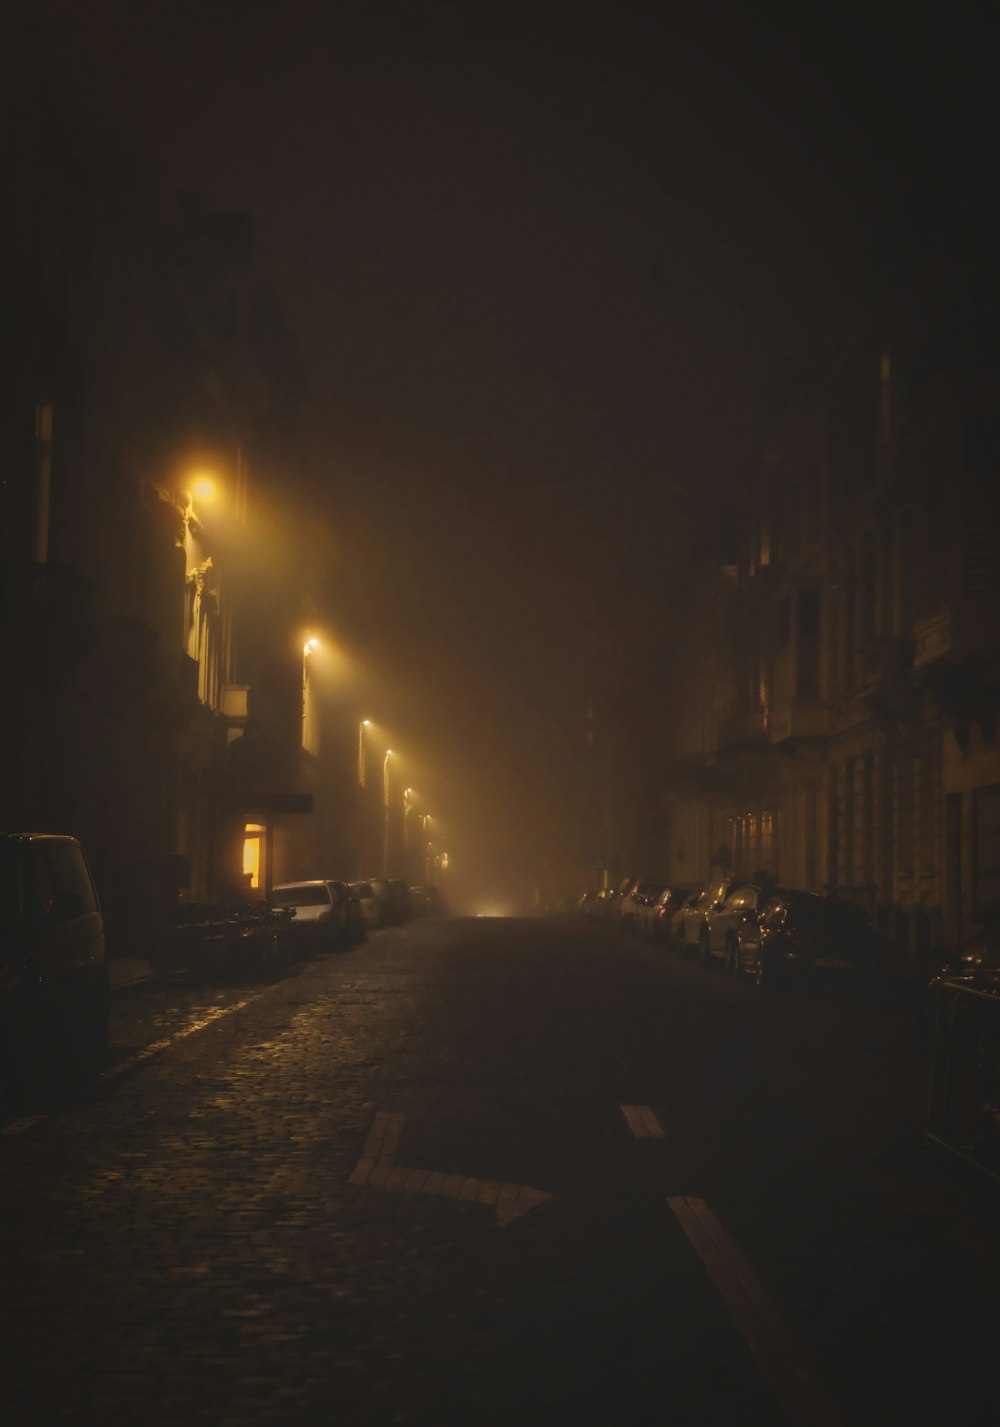 beleuchtete Straßenlaternen während der Nachtzeit